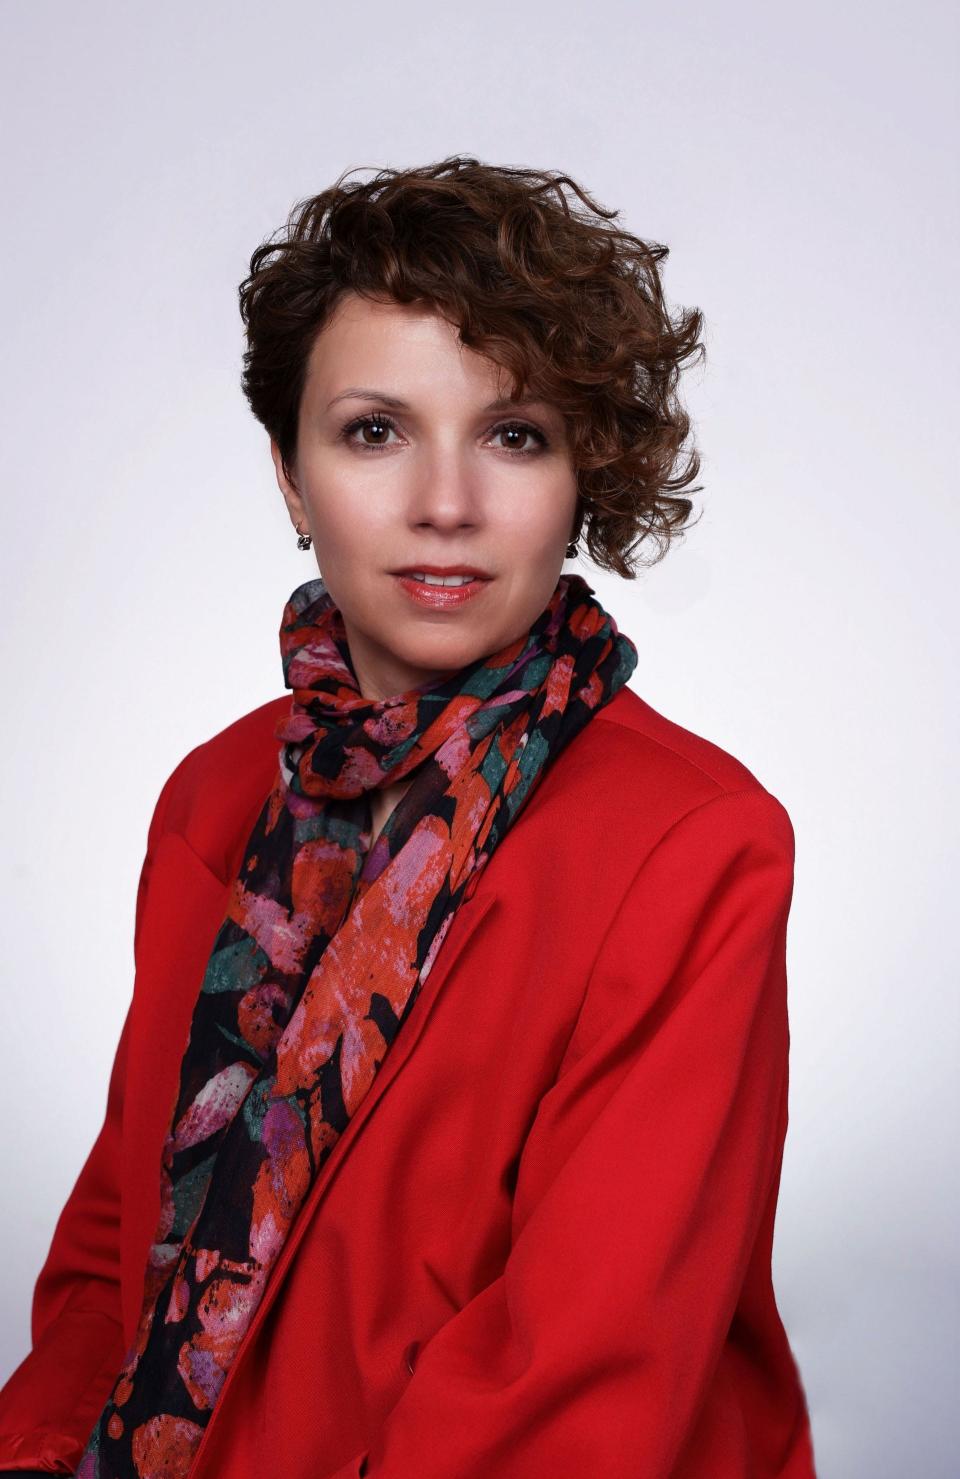 Julie Mchedlishvili, candidate for Ridgewood Board of Education